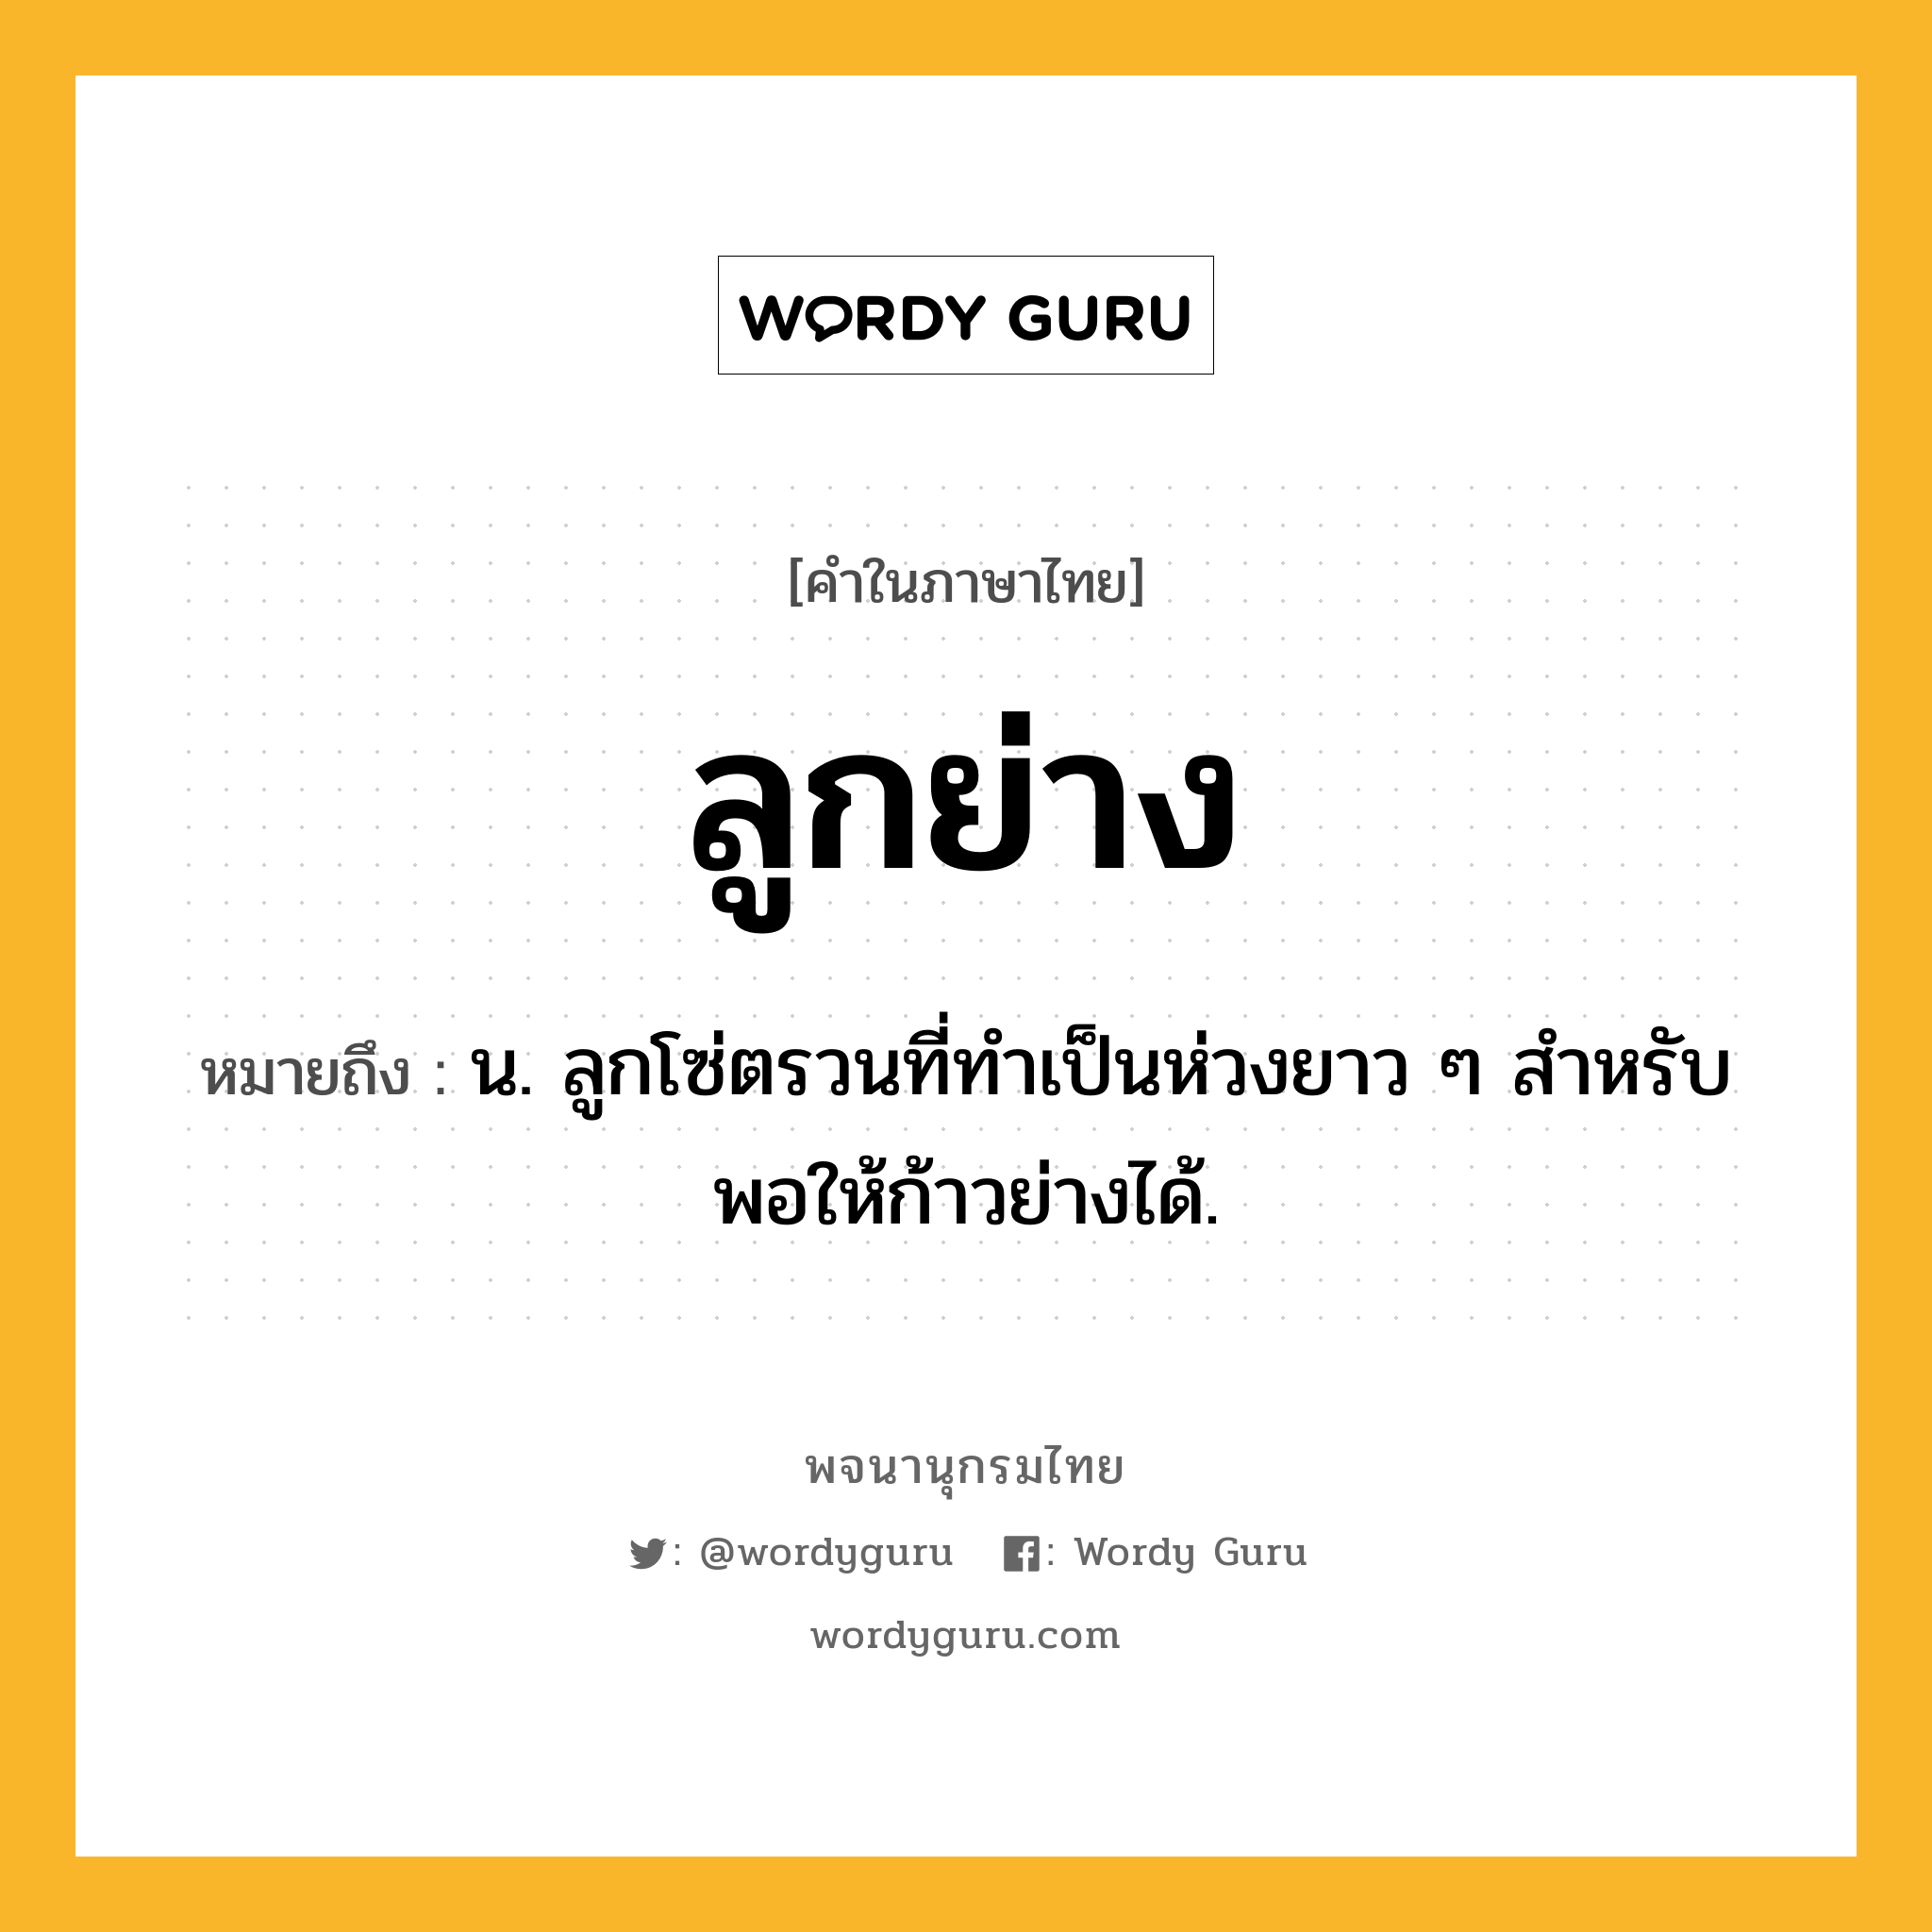 ลูกย่าง ความหมาย หมายถึงอะไร?, คำในภาษาไทย ลูกย่าง หมายถึง น. ลูกโซ่ตรวนที่ทําเป็นห่วงยาว ๆ สําหรับพอให้ก้าวย่างได้.